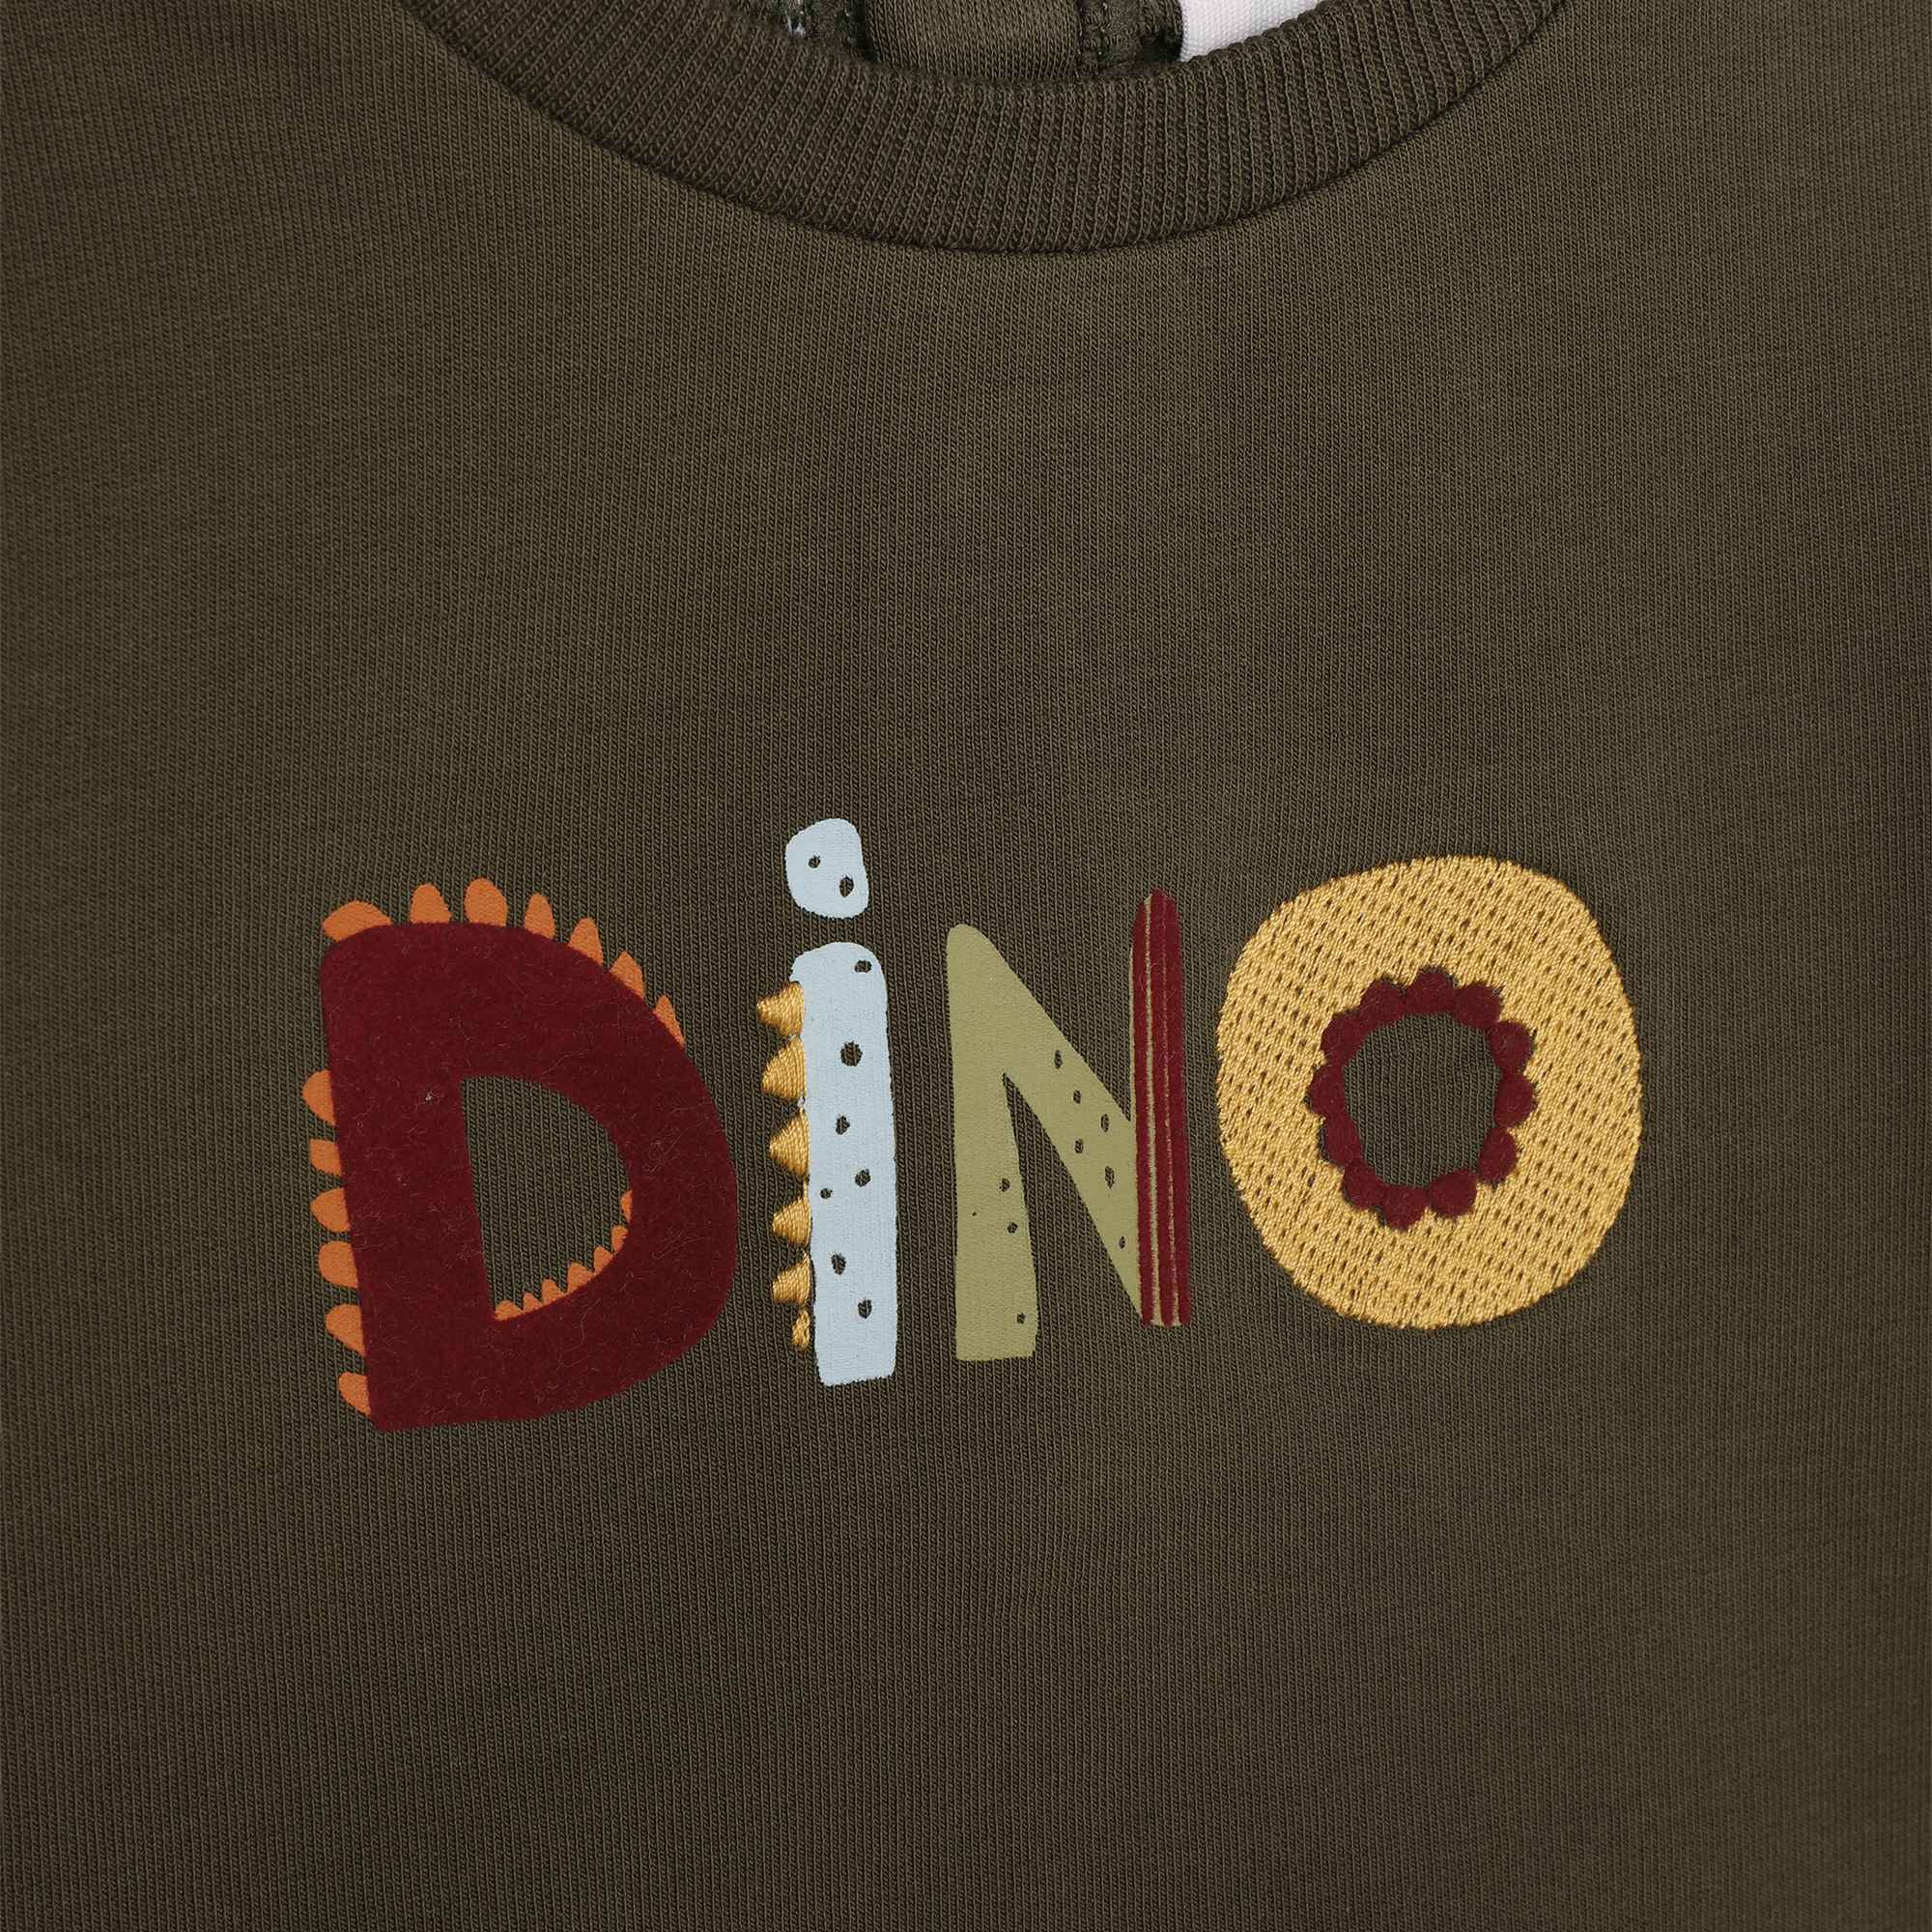 Sweater mit dino-print CARREMENT BEAU Für JUNGE